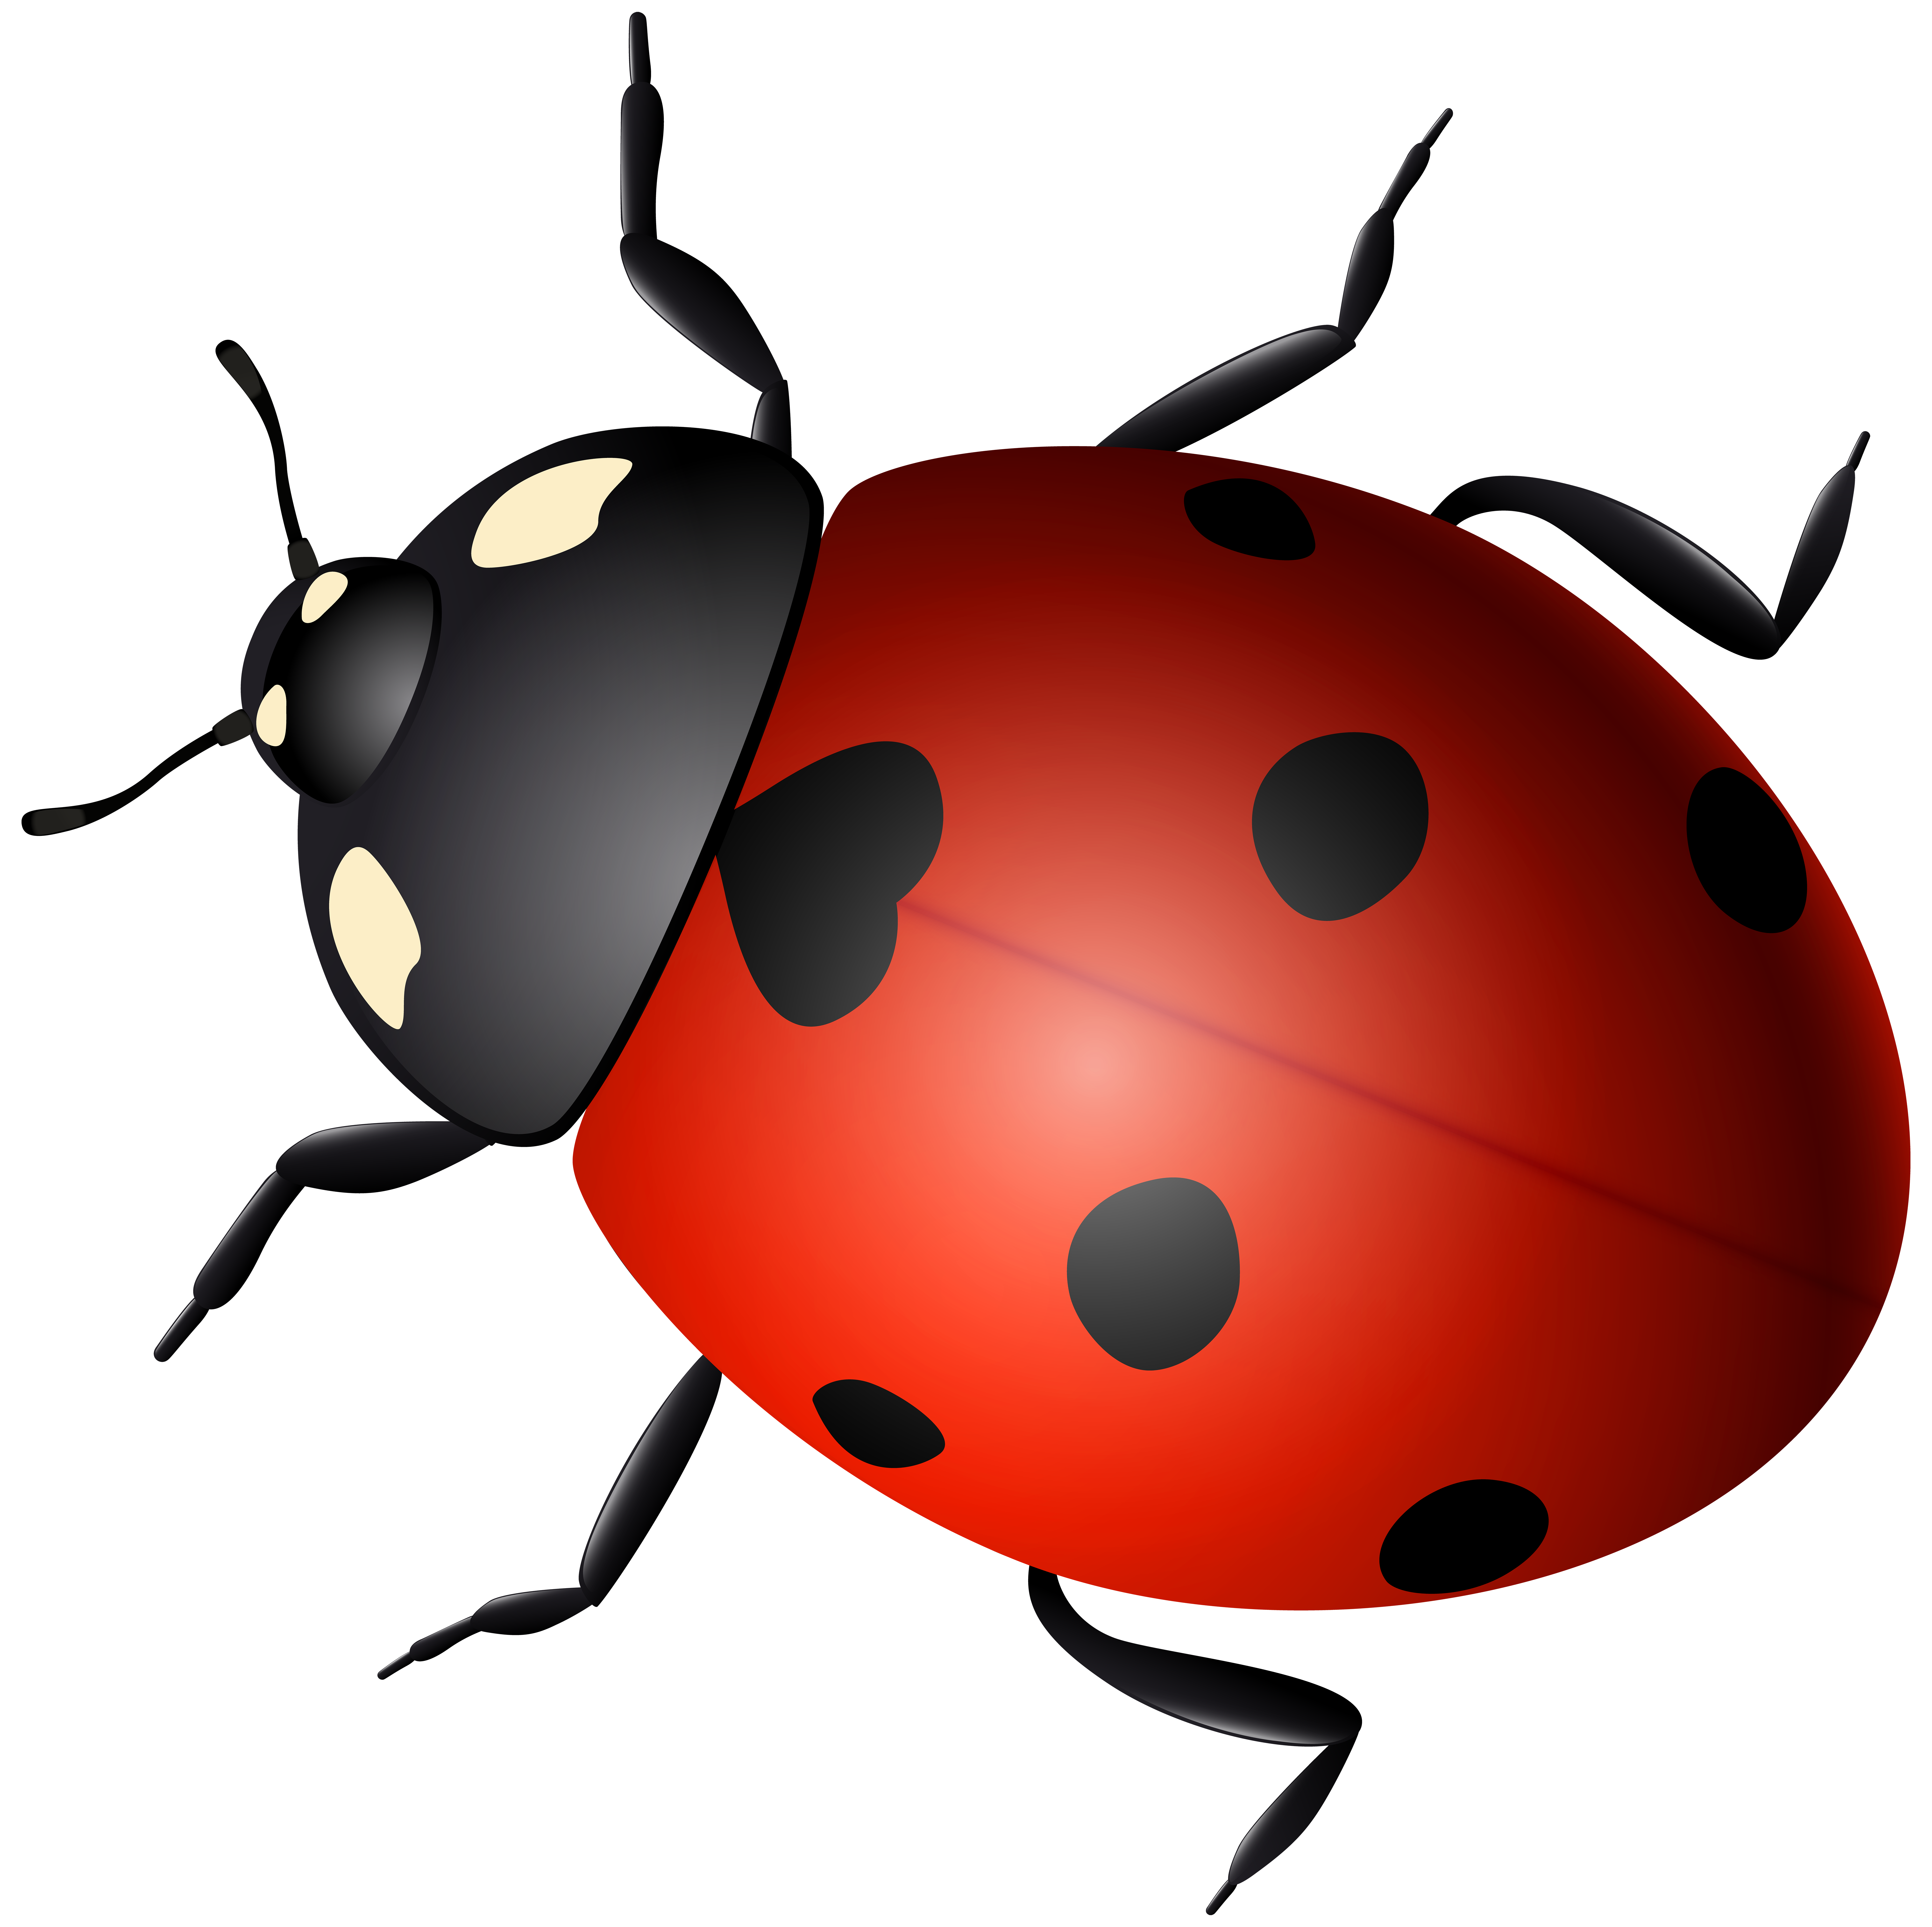 Ladybug Decorative Transparent Image​